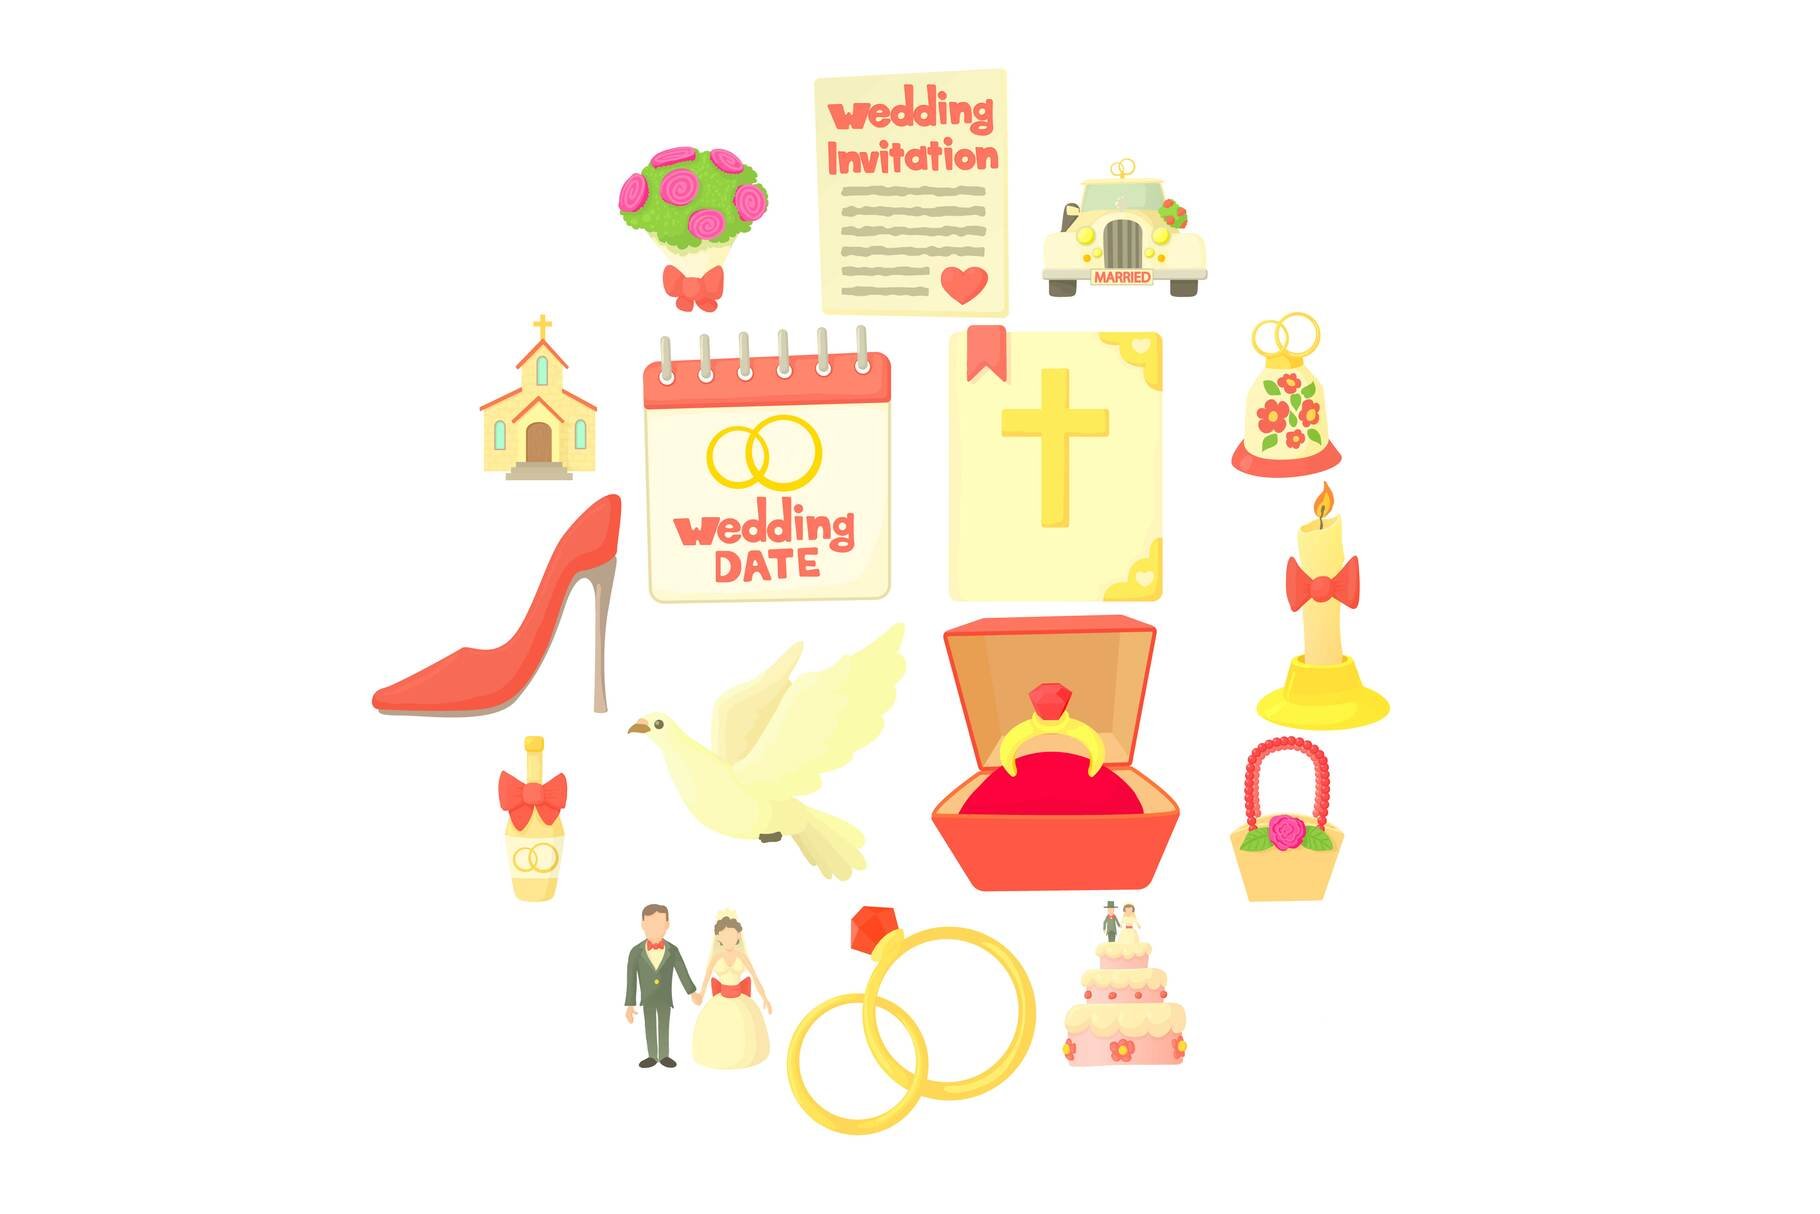 Wedding icons set, cartoon style cover image.